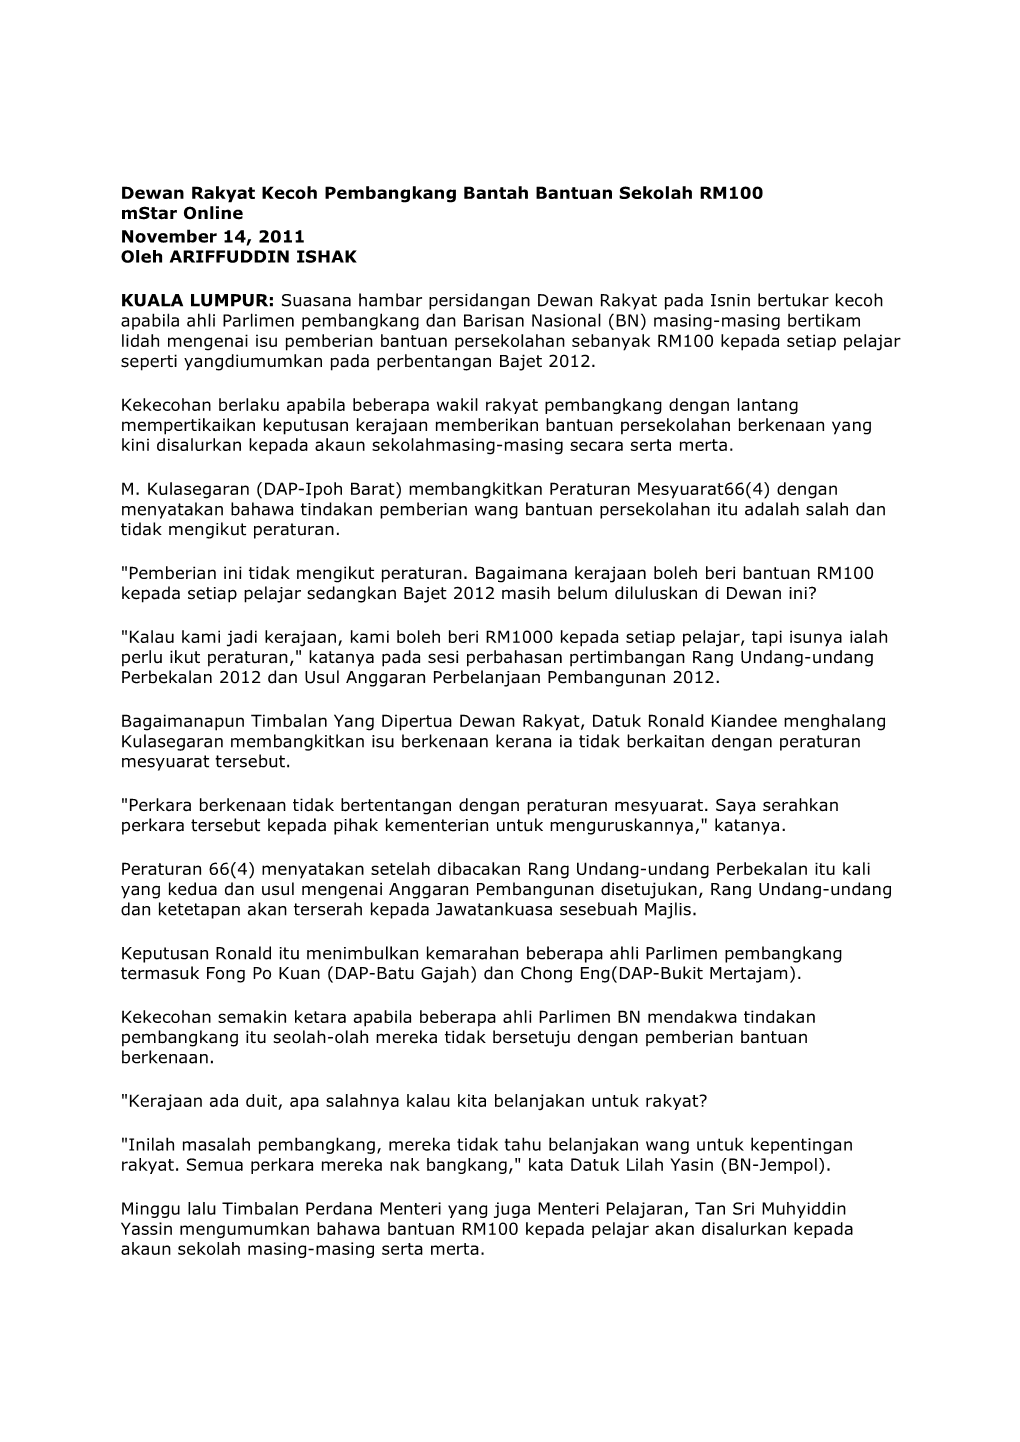 Dewan Rakyat Kecoh Pembangkang Bantah Bantuan Sekolah RM100 Mstar Online November 14, 2011 Oleh ARIFFUDDIN ISHAK KUALA LUMPUR